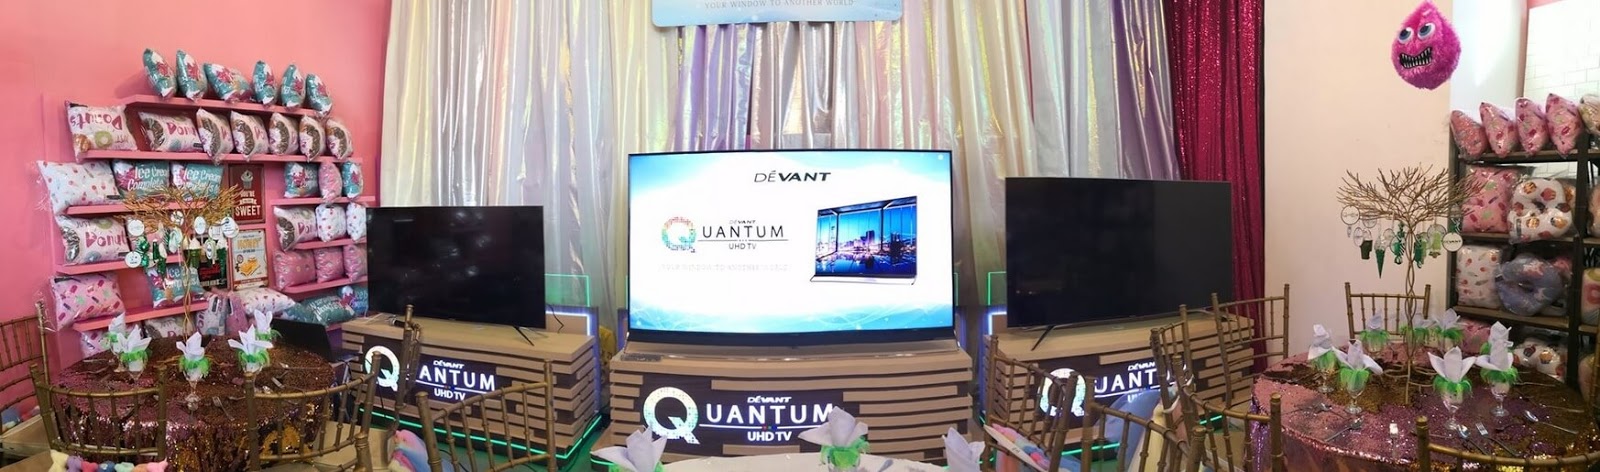 Devant Quantum UHD TV Series